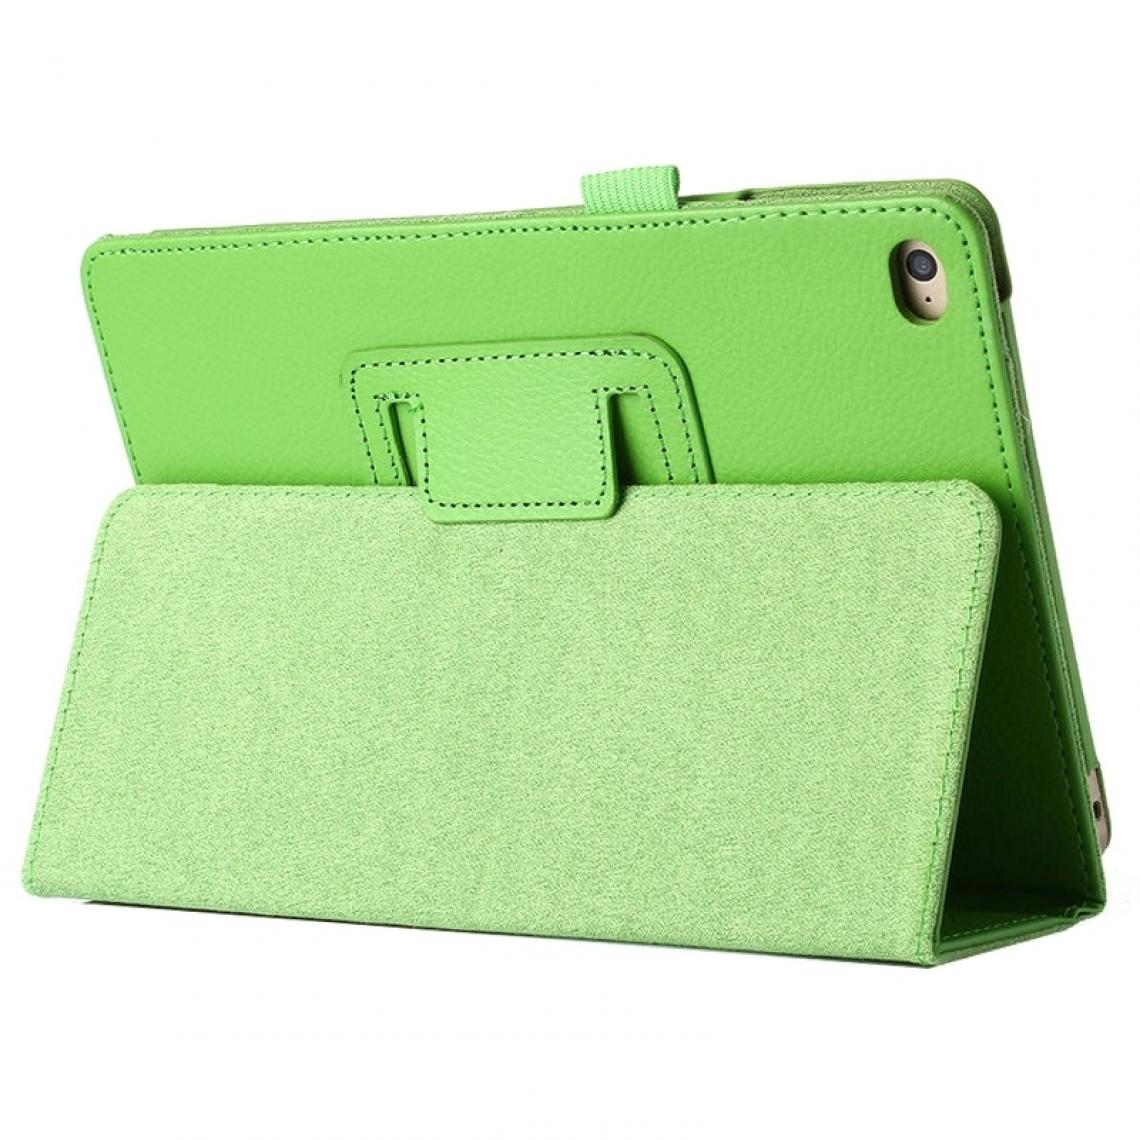 Wewoo - Smart Cover vert pour iPad mini 4 Litchi Texture bascule horizontale en cuir PU étui de protection avec support - Coque, étui smartphone